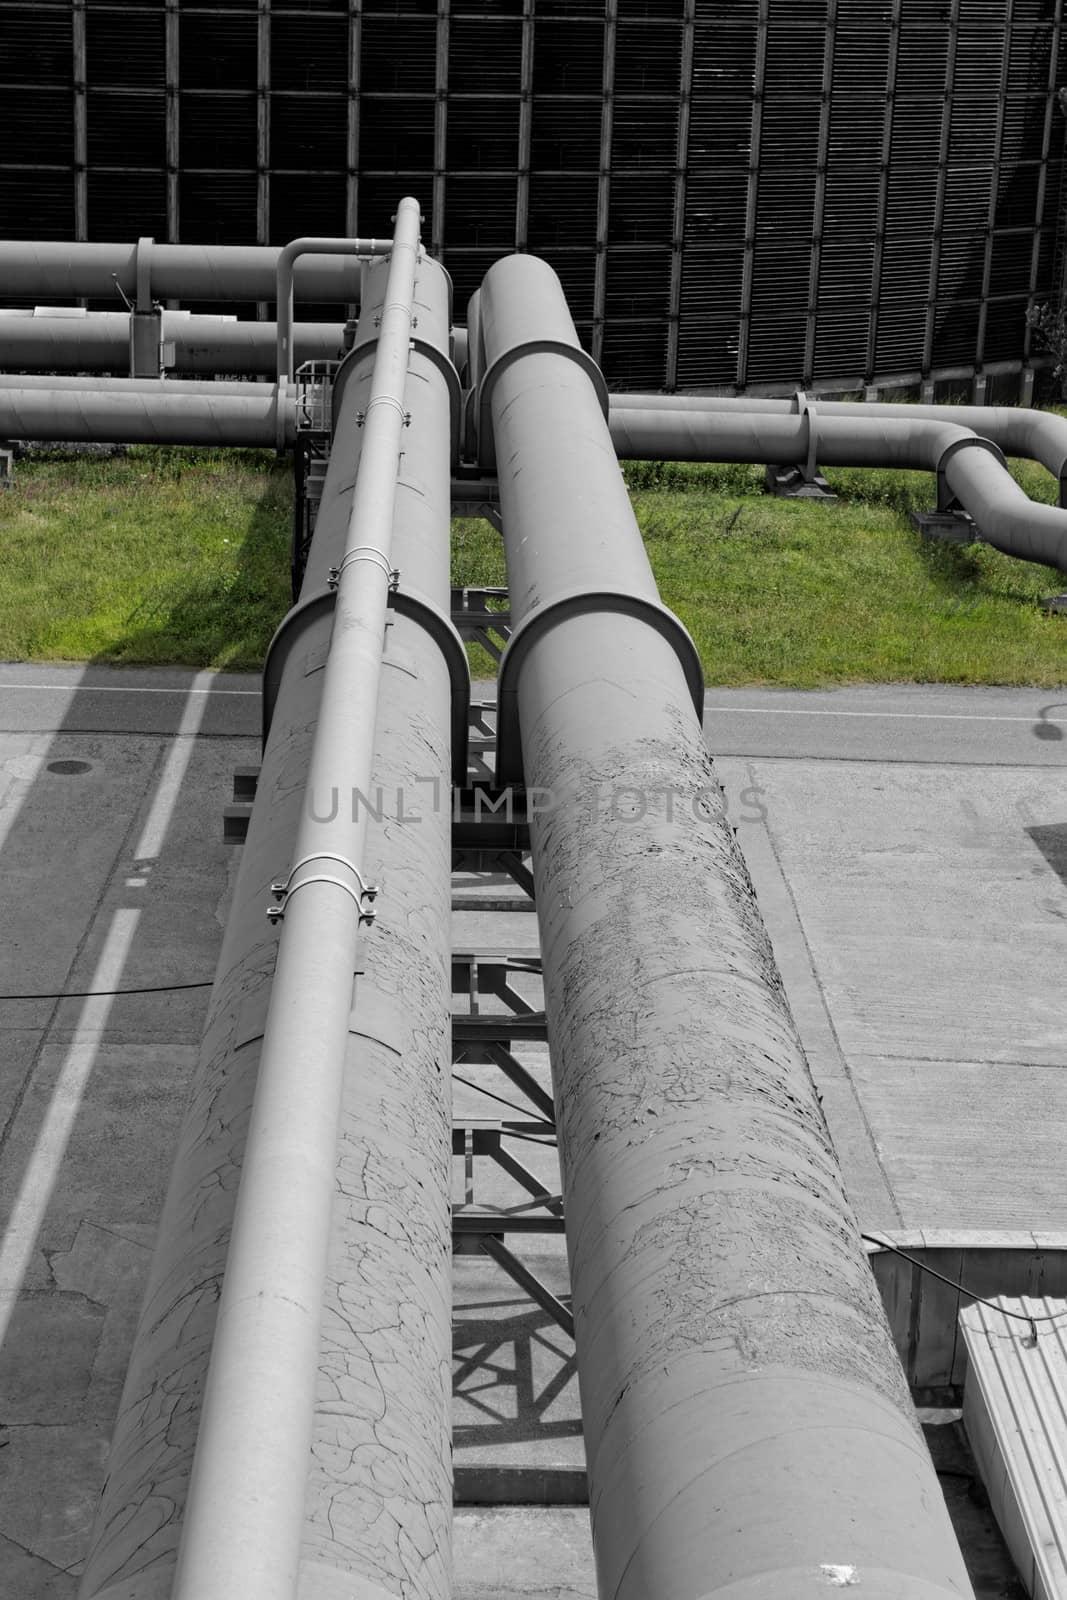 inustrial pipes by NagyDodo